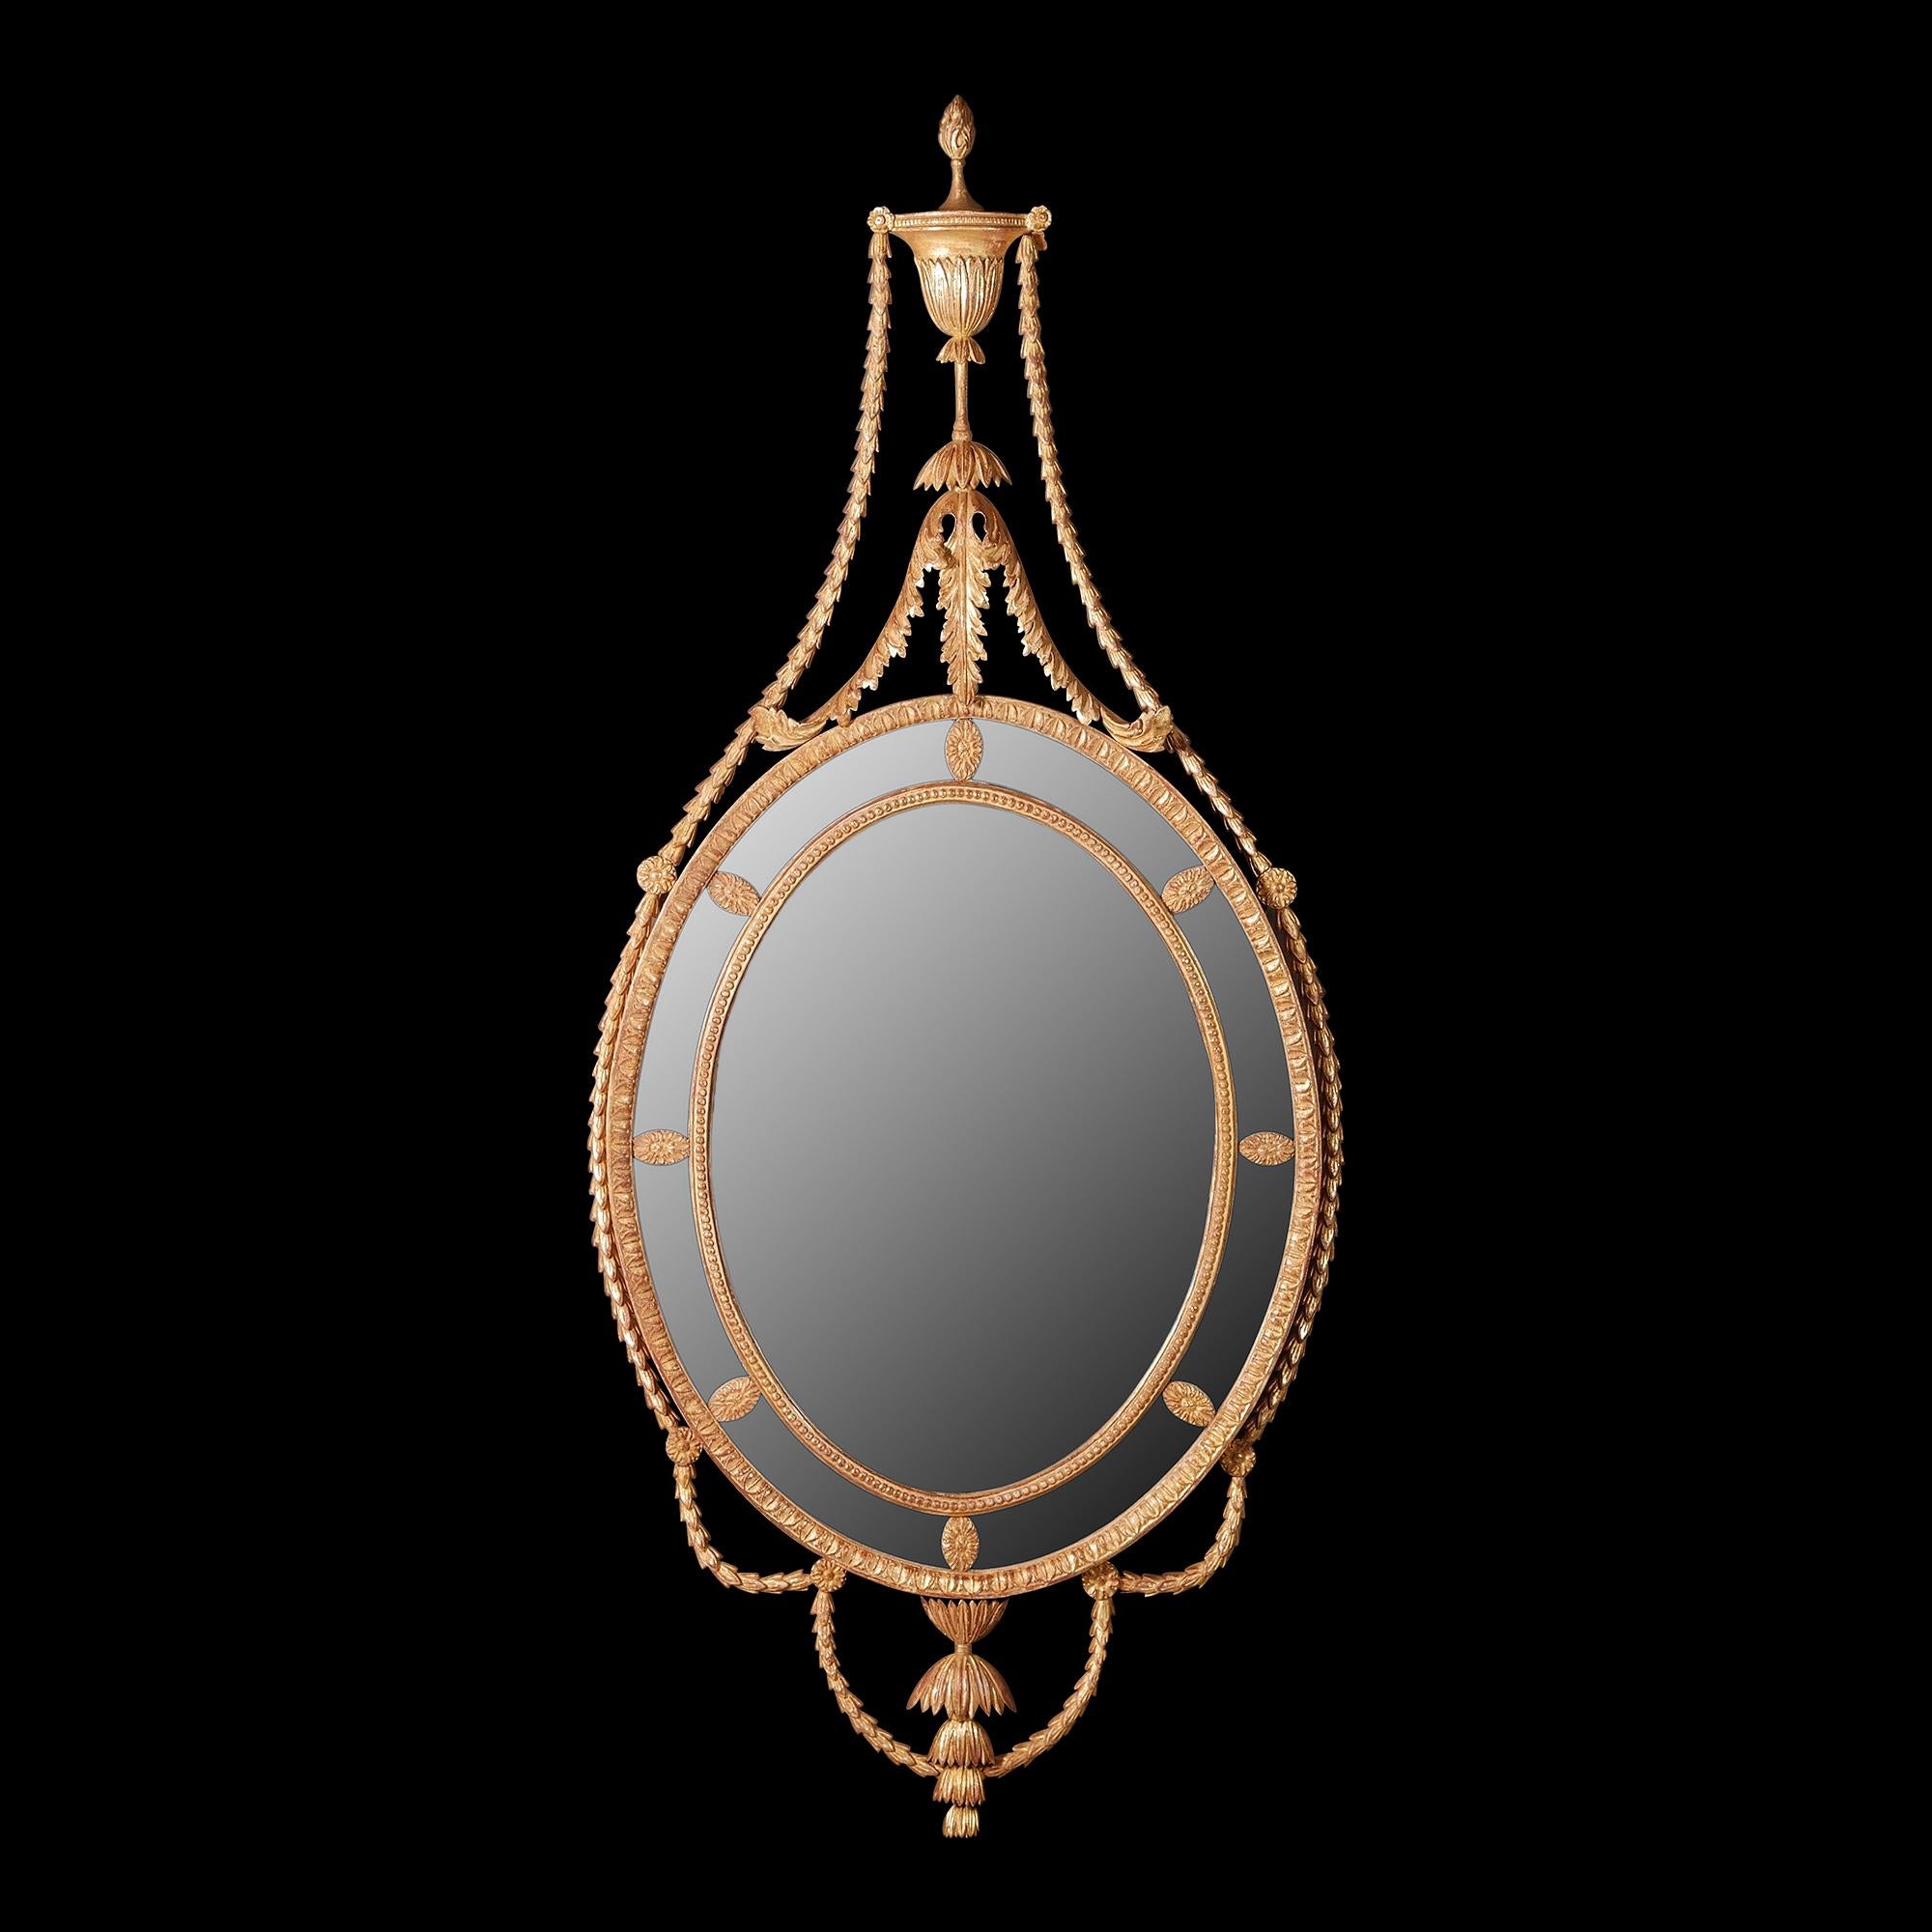 Miroir ovale sculpté de style Adams, avec un cadre extérieur sculpté de feuilles et un cadre intérieur sculpté de perles. Les verres de la bordure sont ponctués de paterae ovales en forme de têtes de fleurs. La crête est formée d'une urne classique.